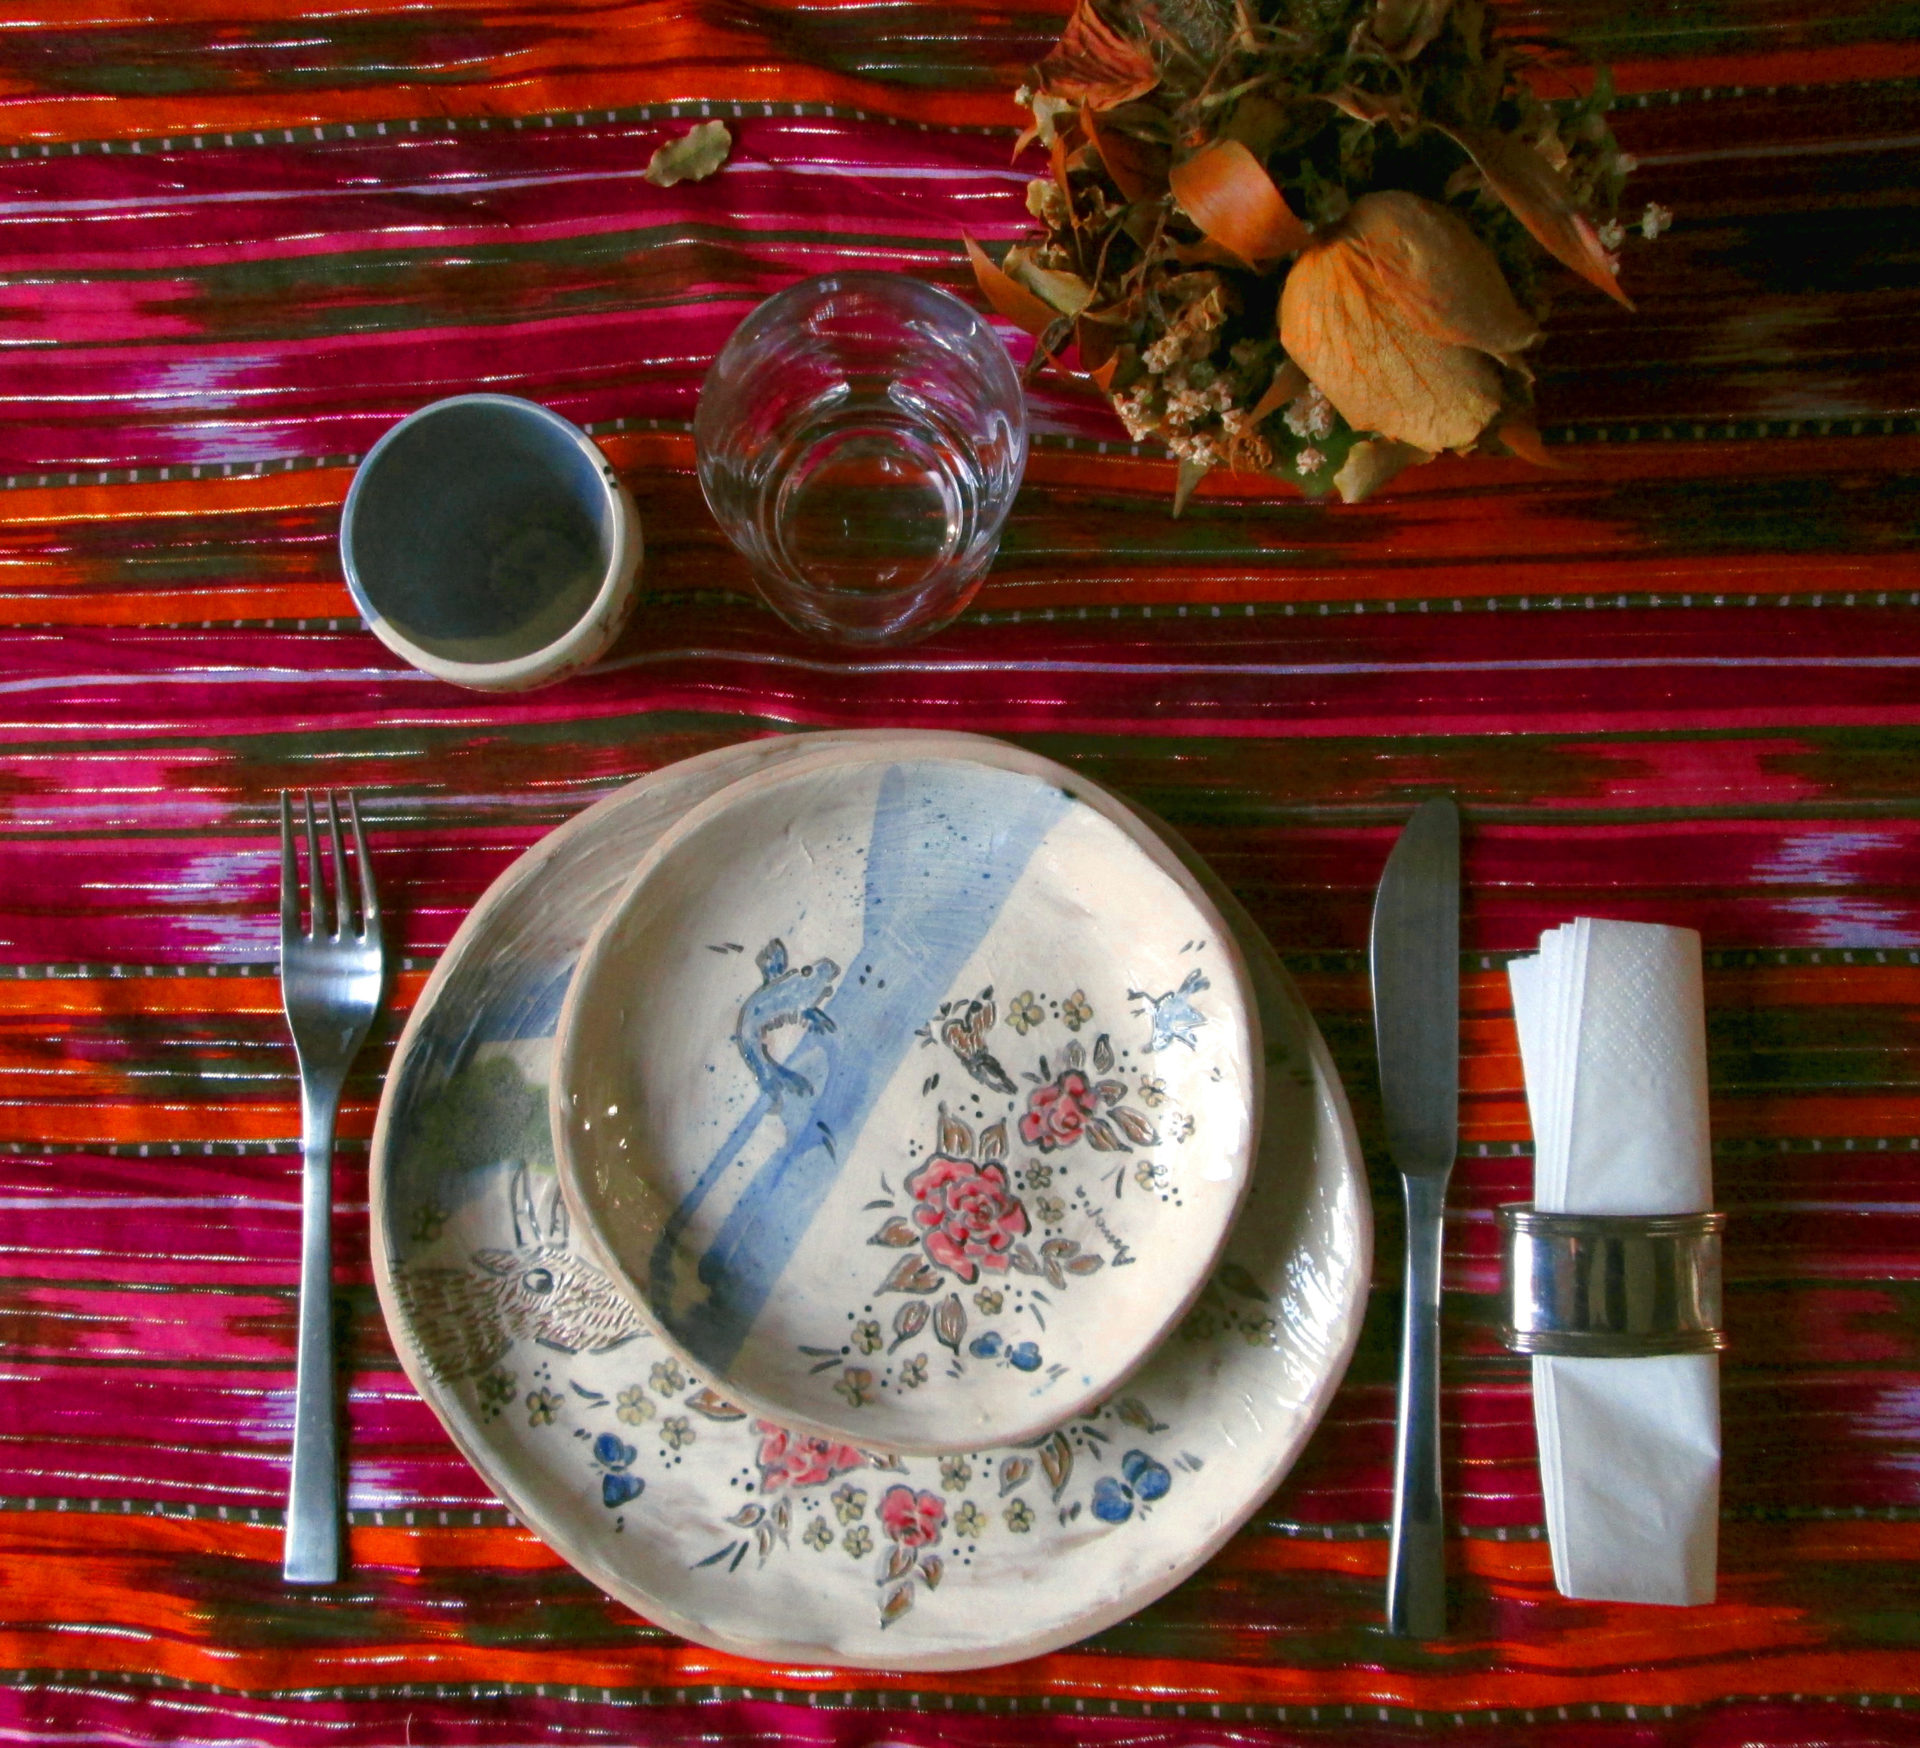 artigianato sostenibile ceramic design tableware plate